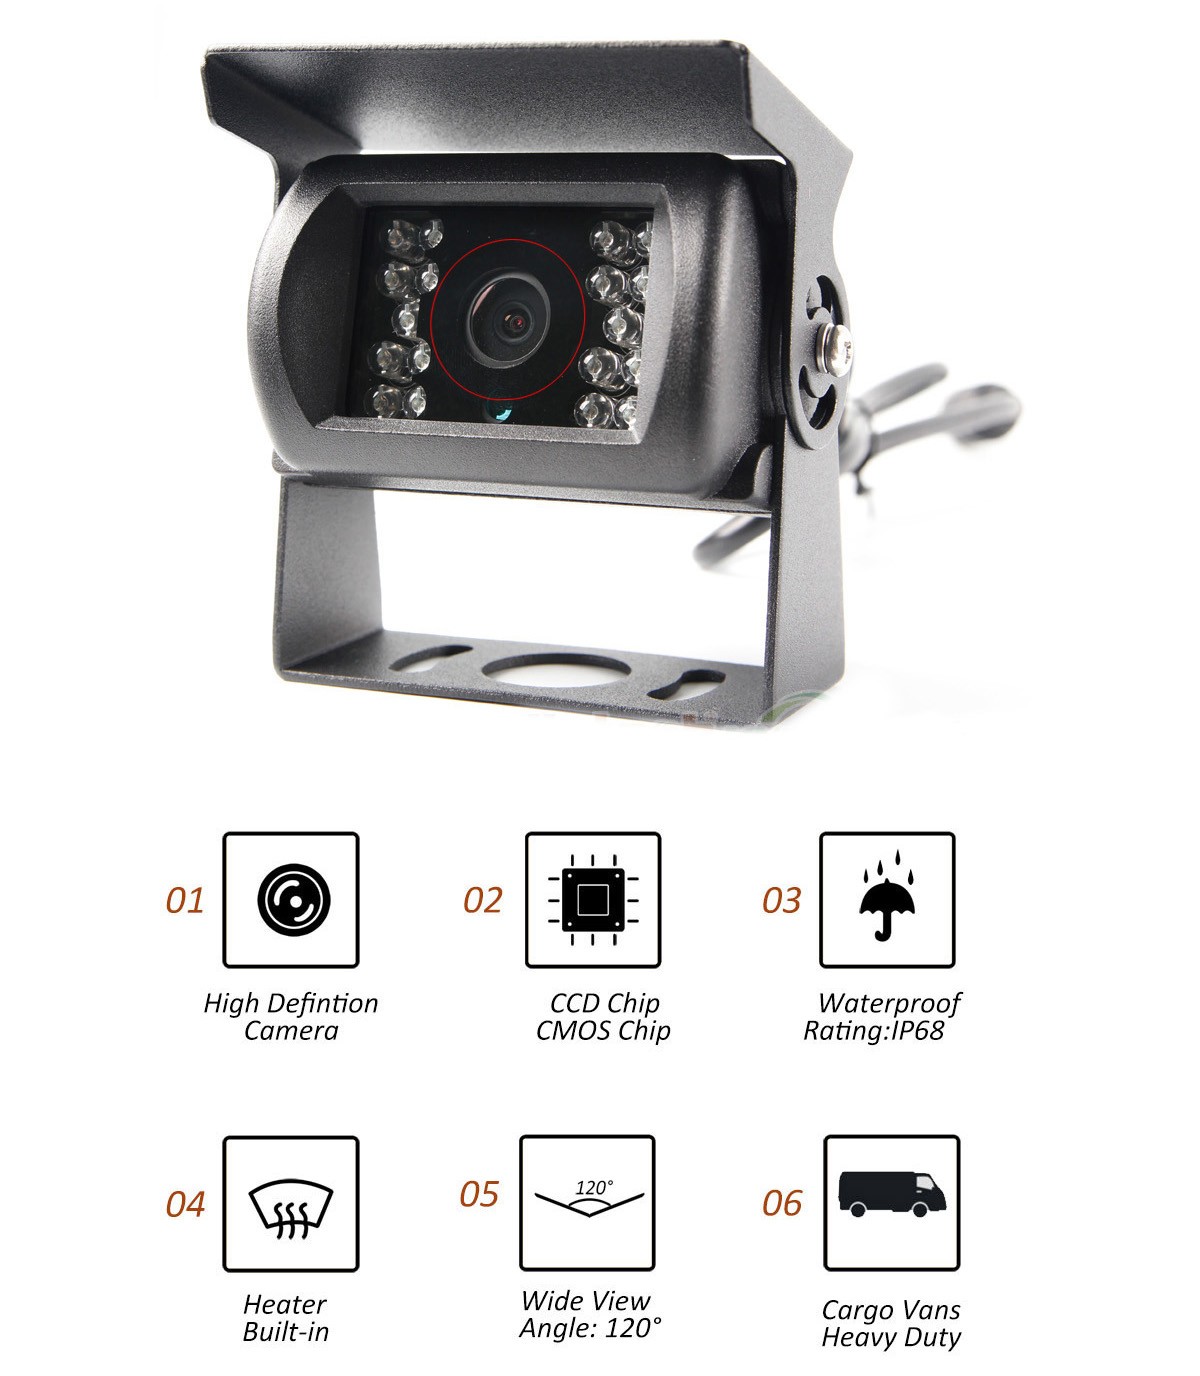 HD-камера устойчива к температуре -40°C - защита IP69K